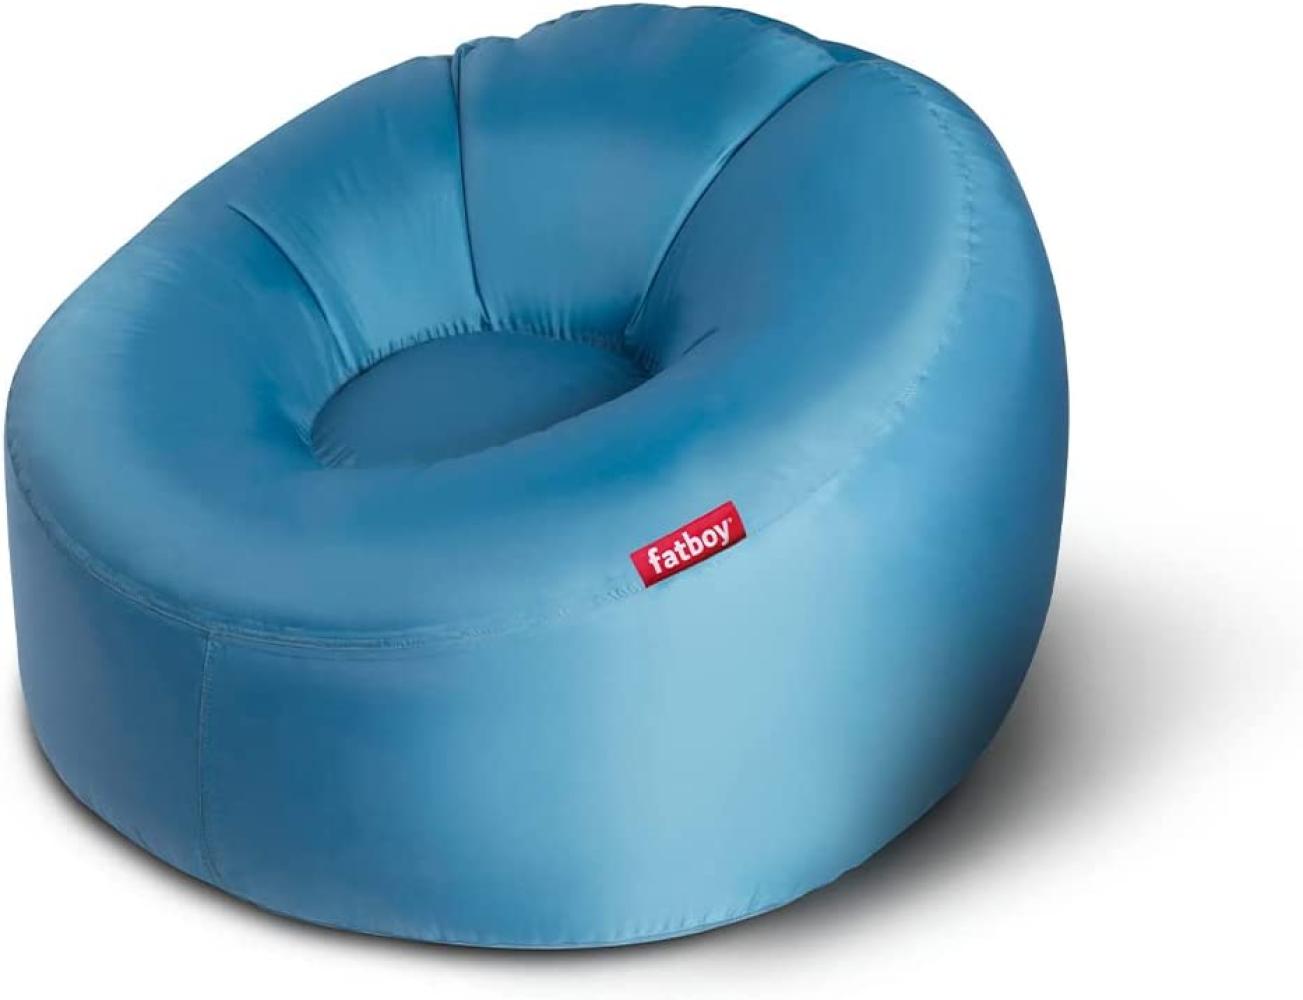 Fatboy® Lamzac 3. 0 Luftsofa | Großes, aufblasbares Sofa/Liege/Bett in Blau, Sitzsack mit Luft gefüllt | Outdoor geeignet | 110 x 103 x 62 cm Bild 1